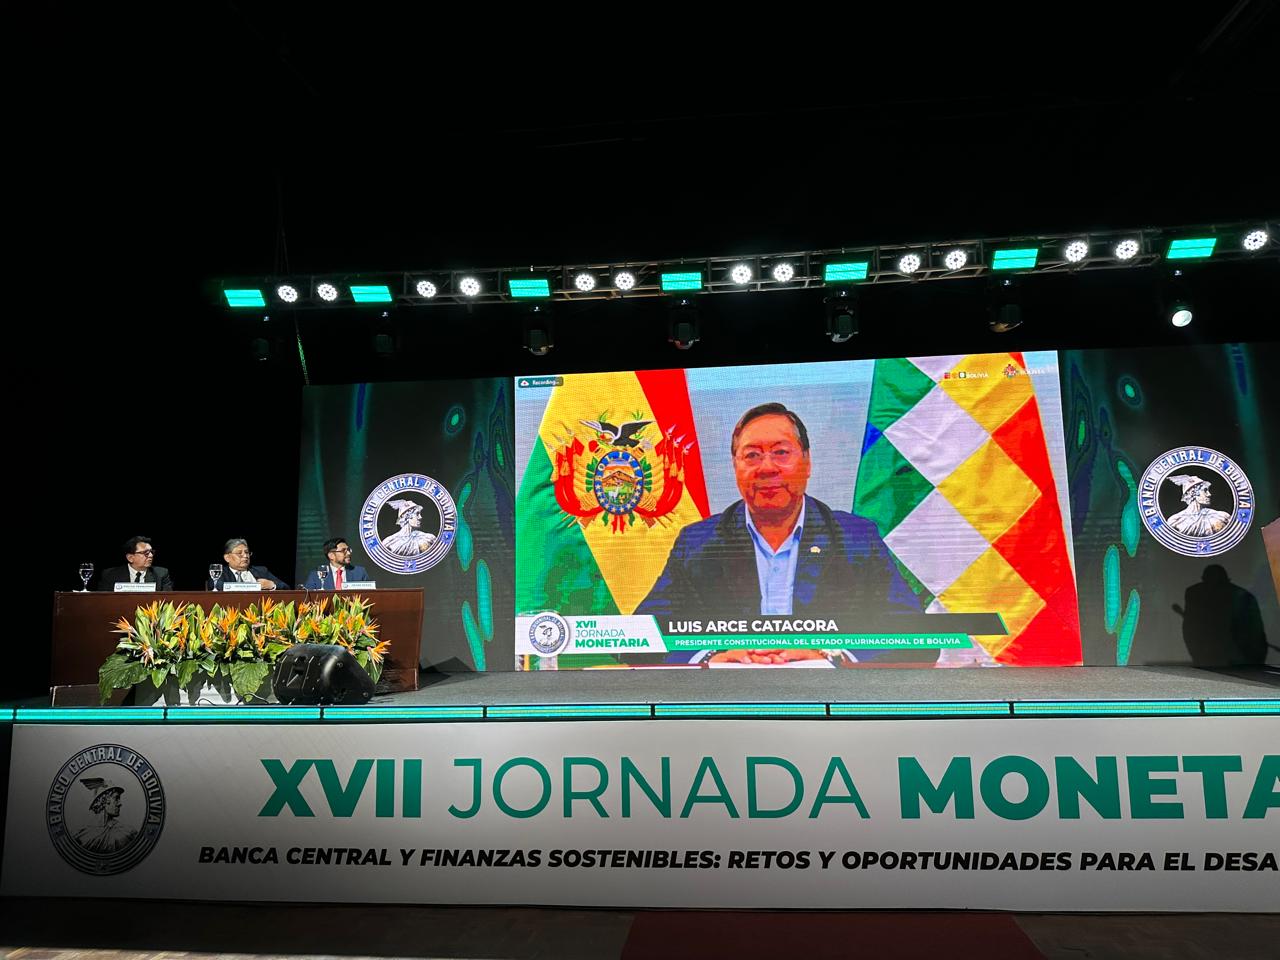 XVII Jornada Monetaria del BCB: Presidente Arce destaca primeros avances en finanzas verdes en el país